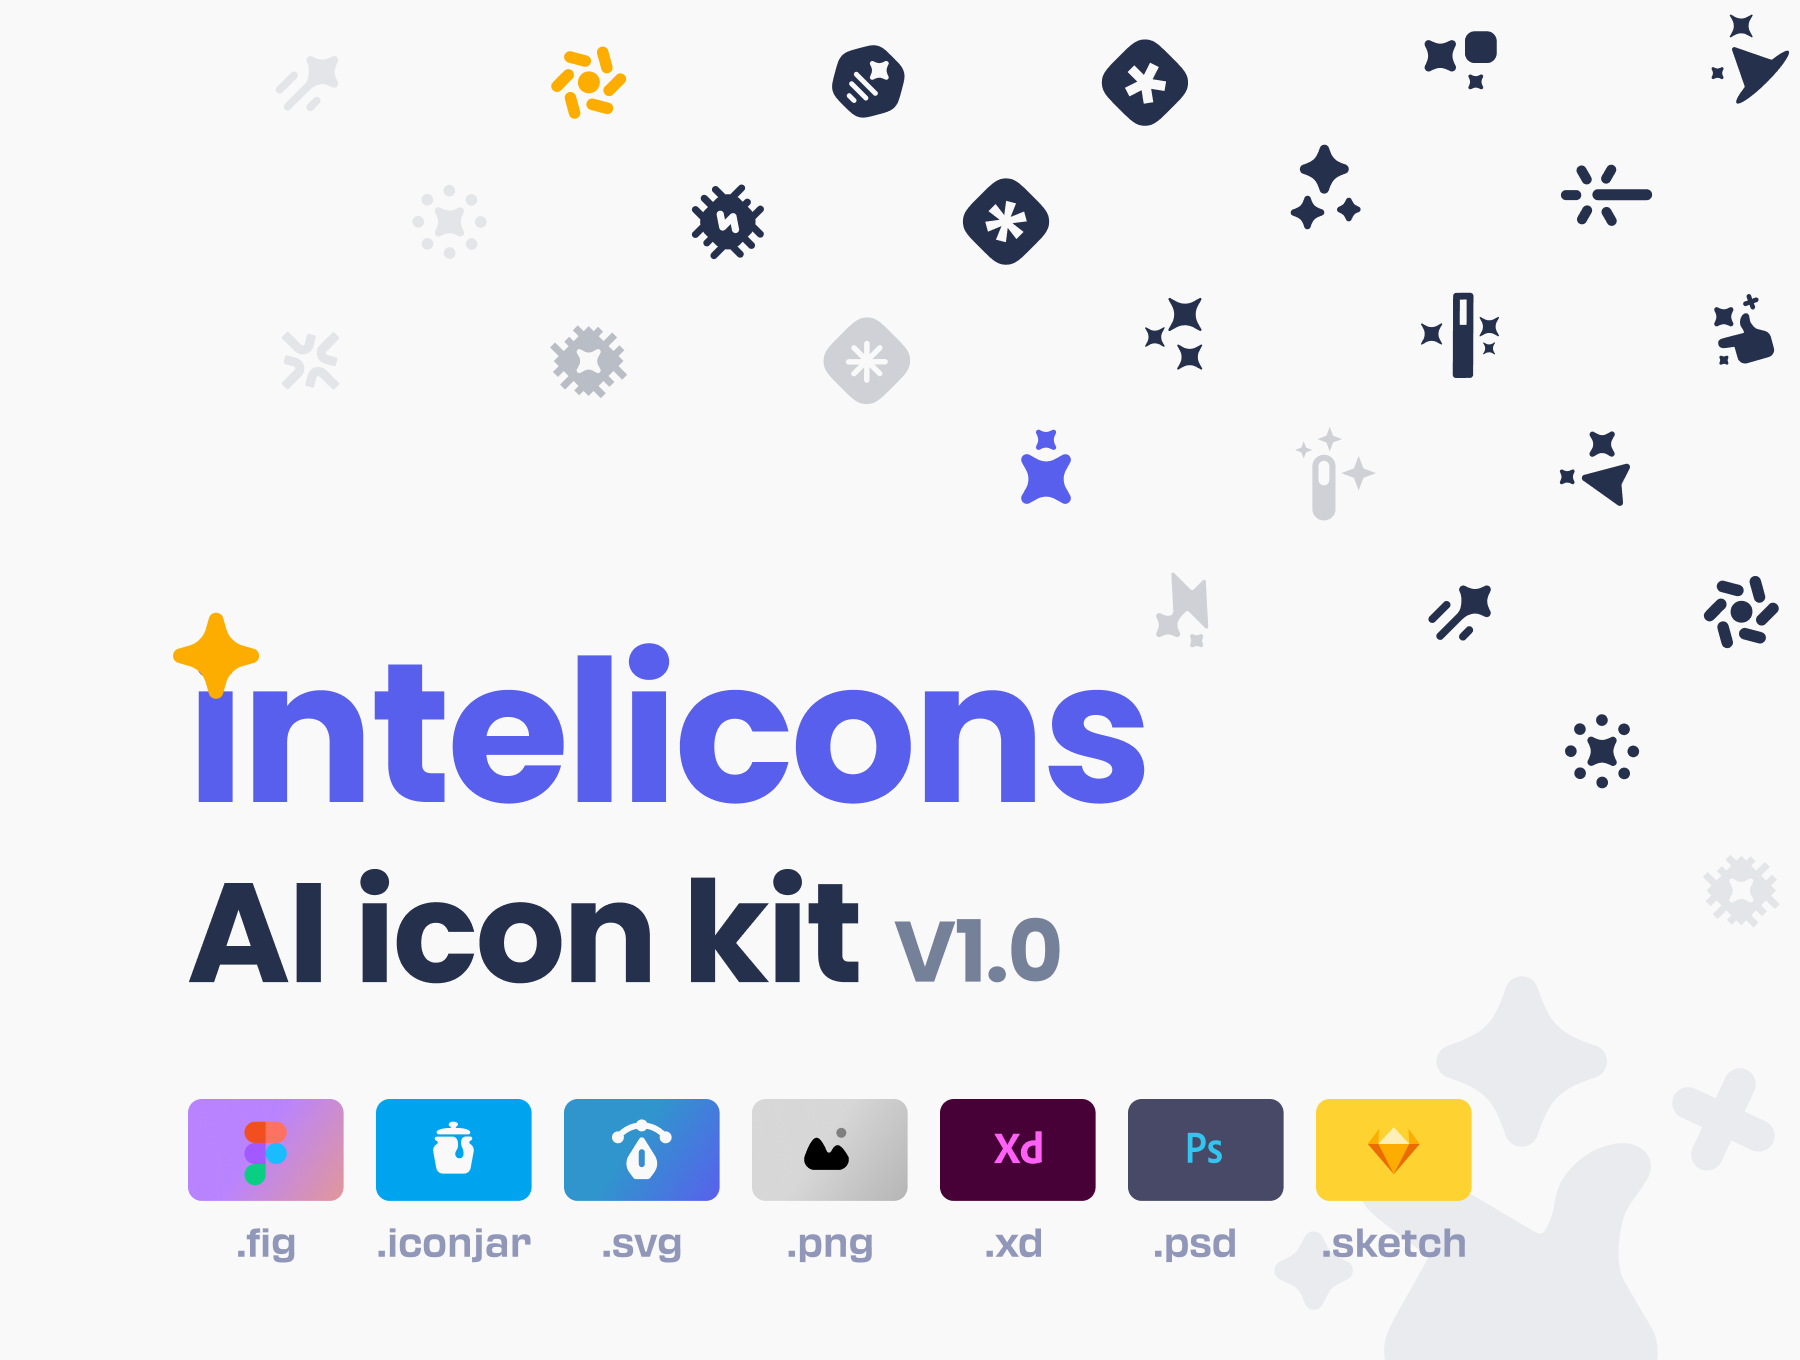 دانلود مجموعه آیکون های intelicons - AI icon kit